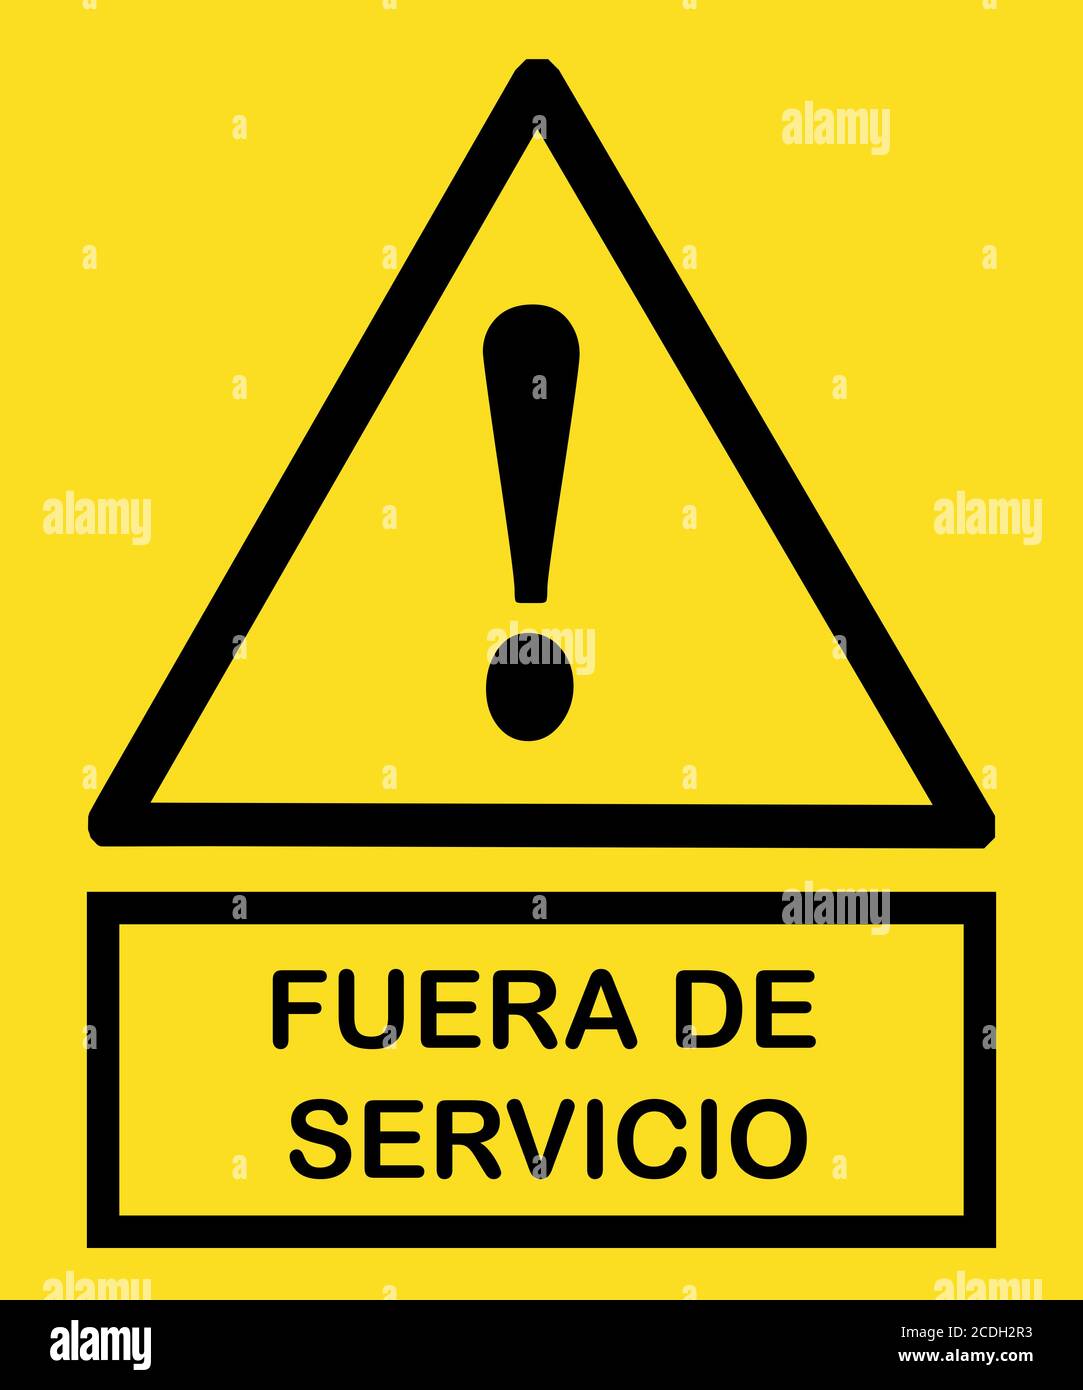 fuera de servicio señal : signo de fuera de servicio con triángulo amarillo y signo de exclamación amarillo bandera Foto de stock